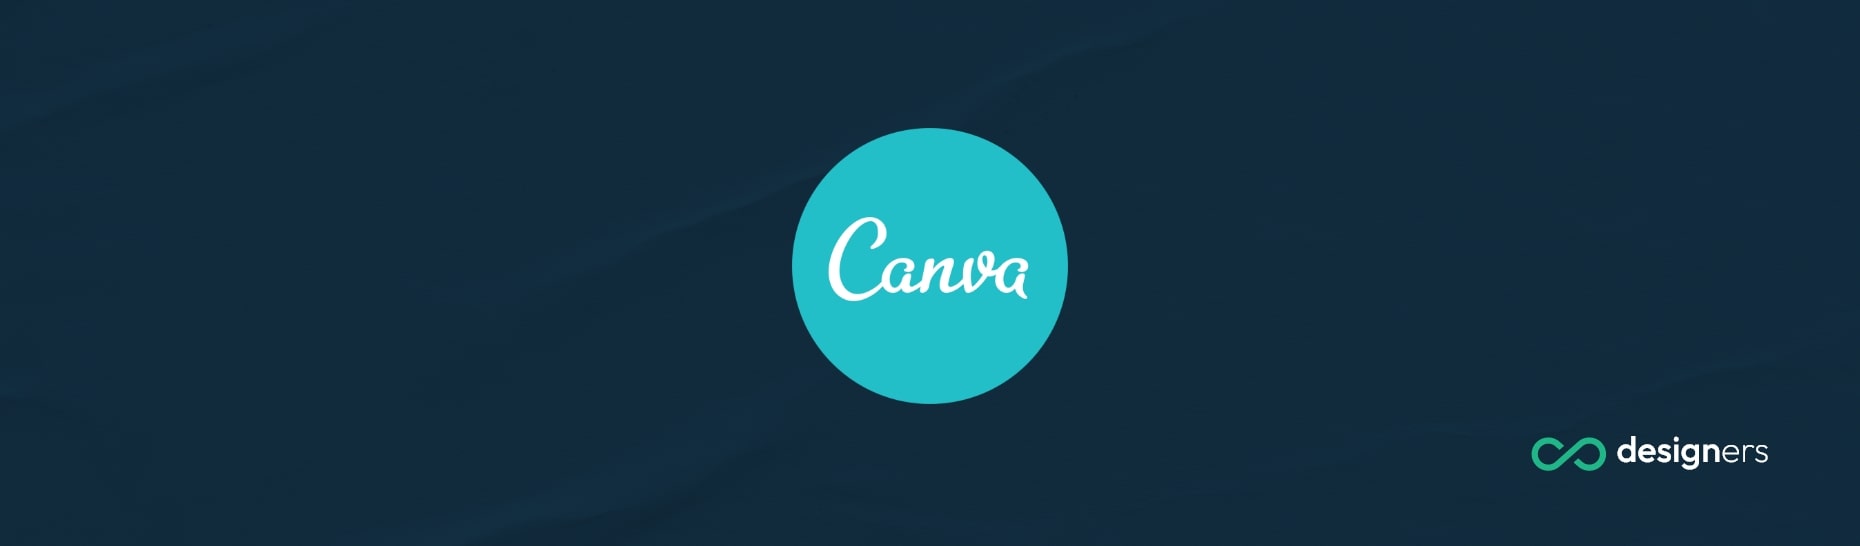 How Do I Log Into Canva App?